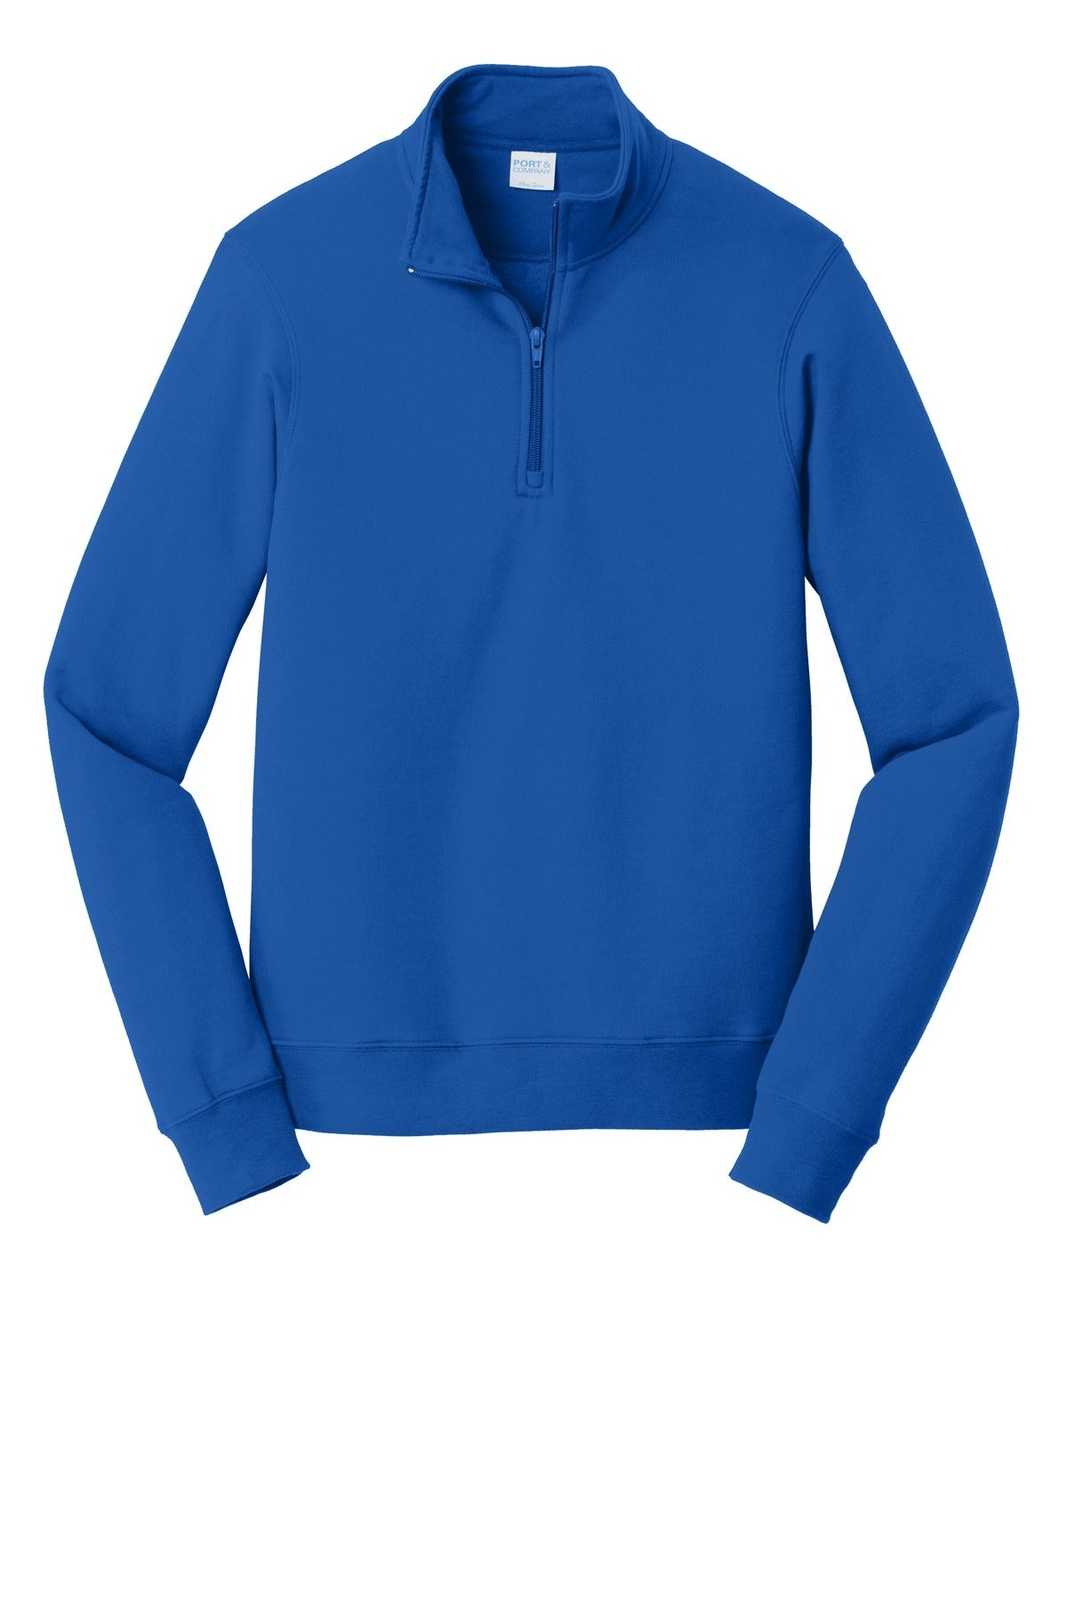 Port &amp; Company PC850Q Fan Favorite Fleece 1/4-Zip Pullover Sweatshirt - True Royal - HIT a Double - 2